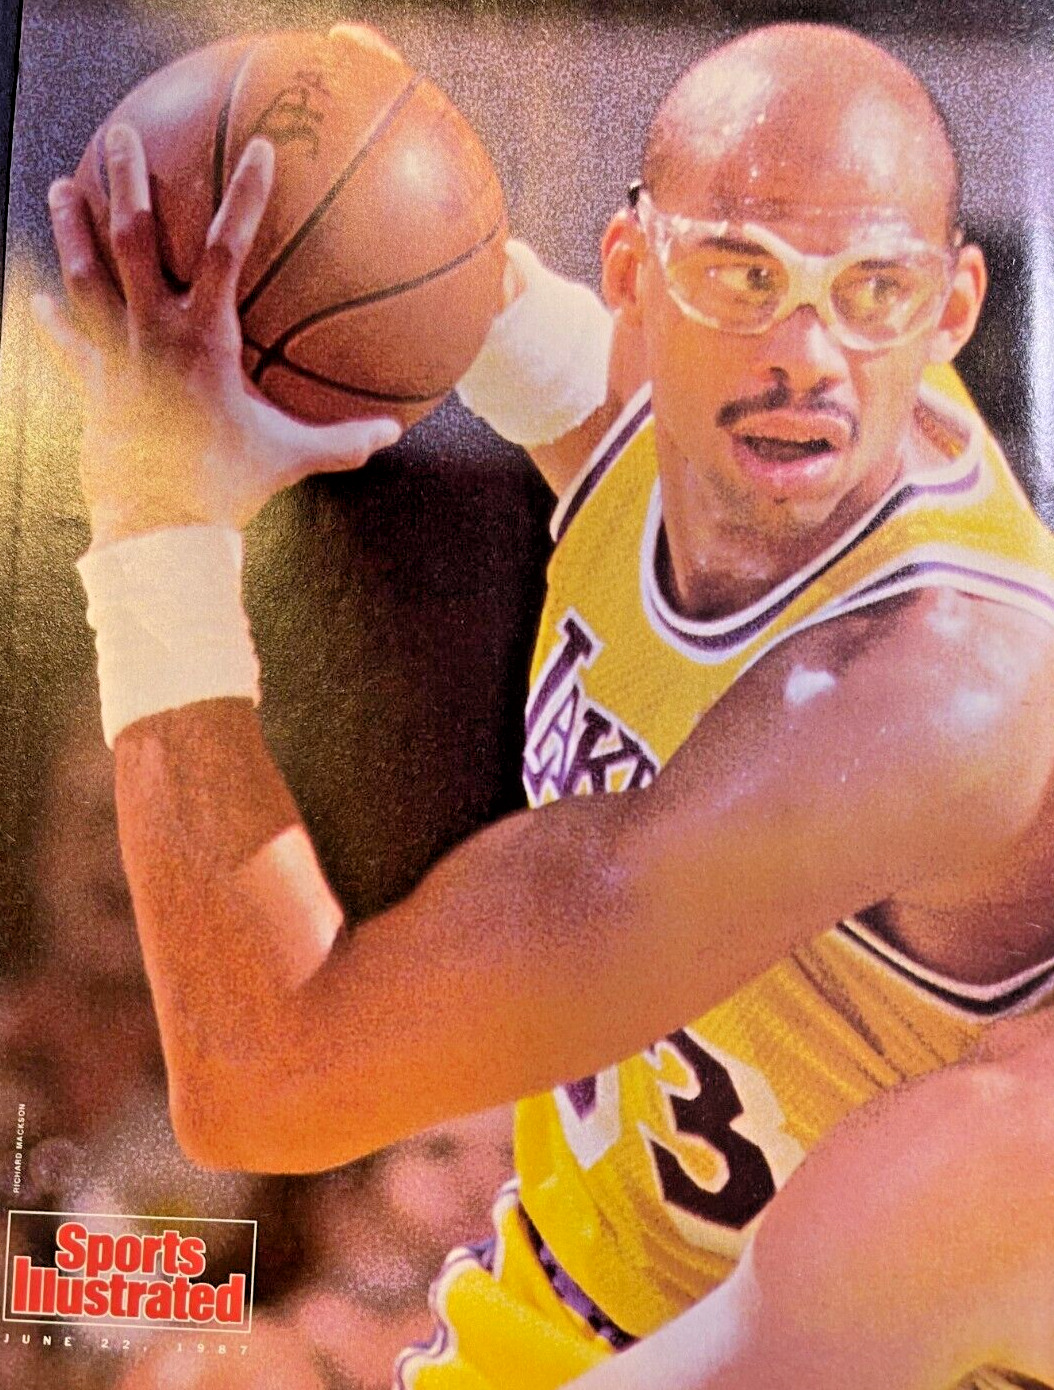 1987 Magazine Illustration Basketball Star Julius Erving Dr. J